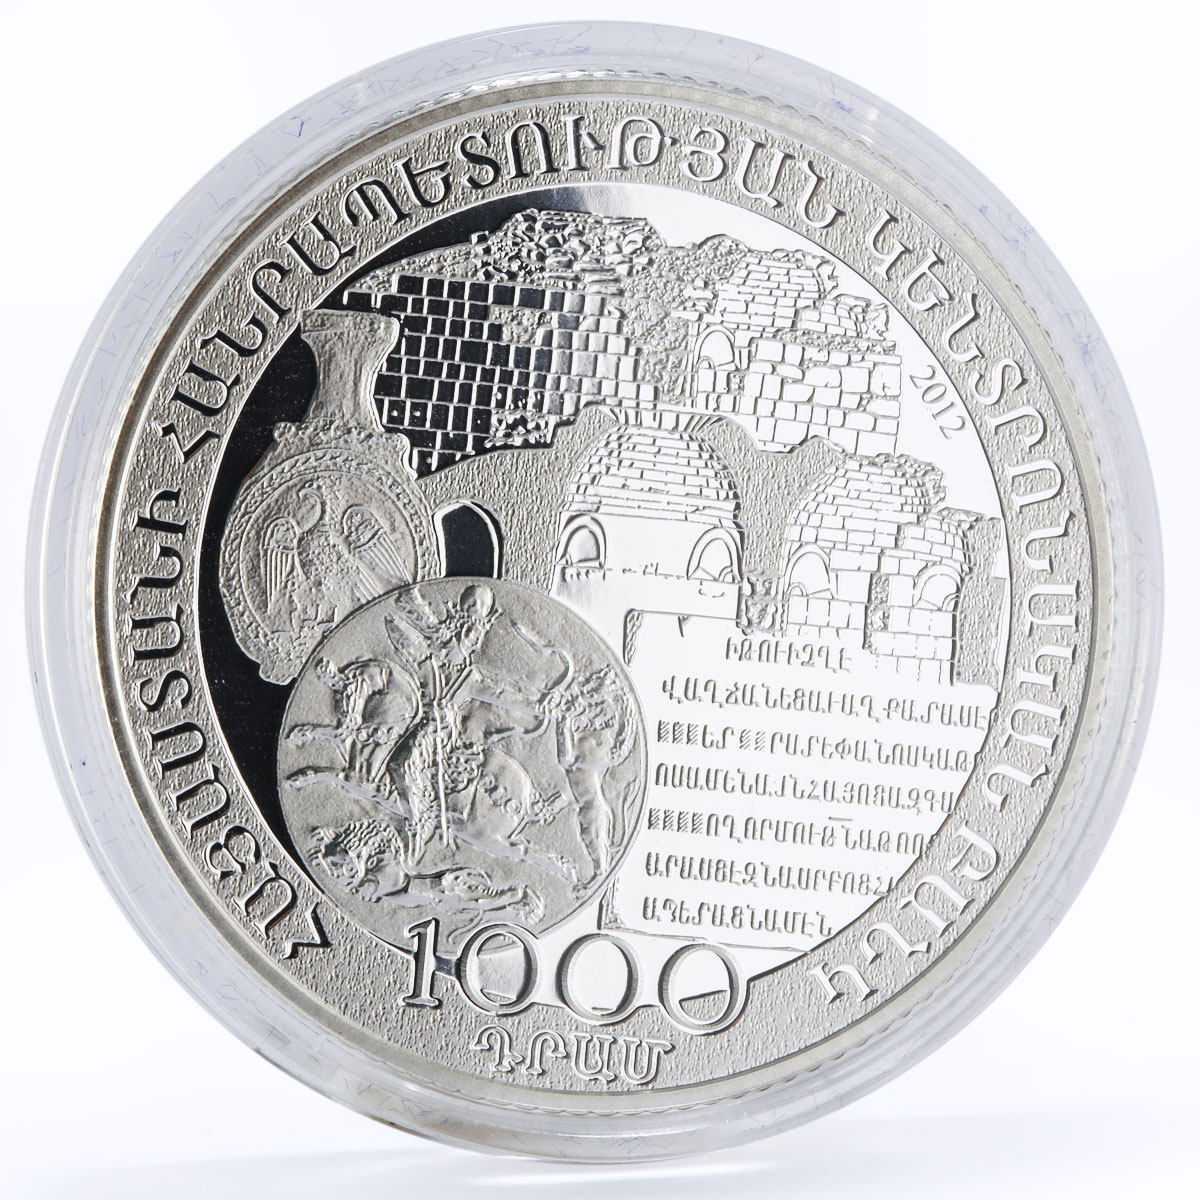 Armenia 1000 dram 125th Anniversary of Joseph Orbeli proof silver coin 2012